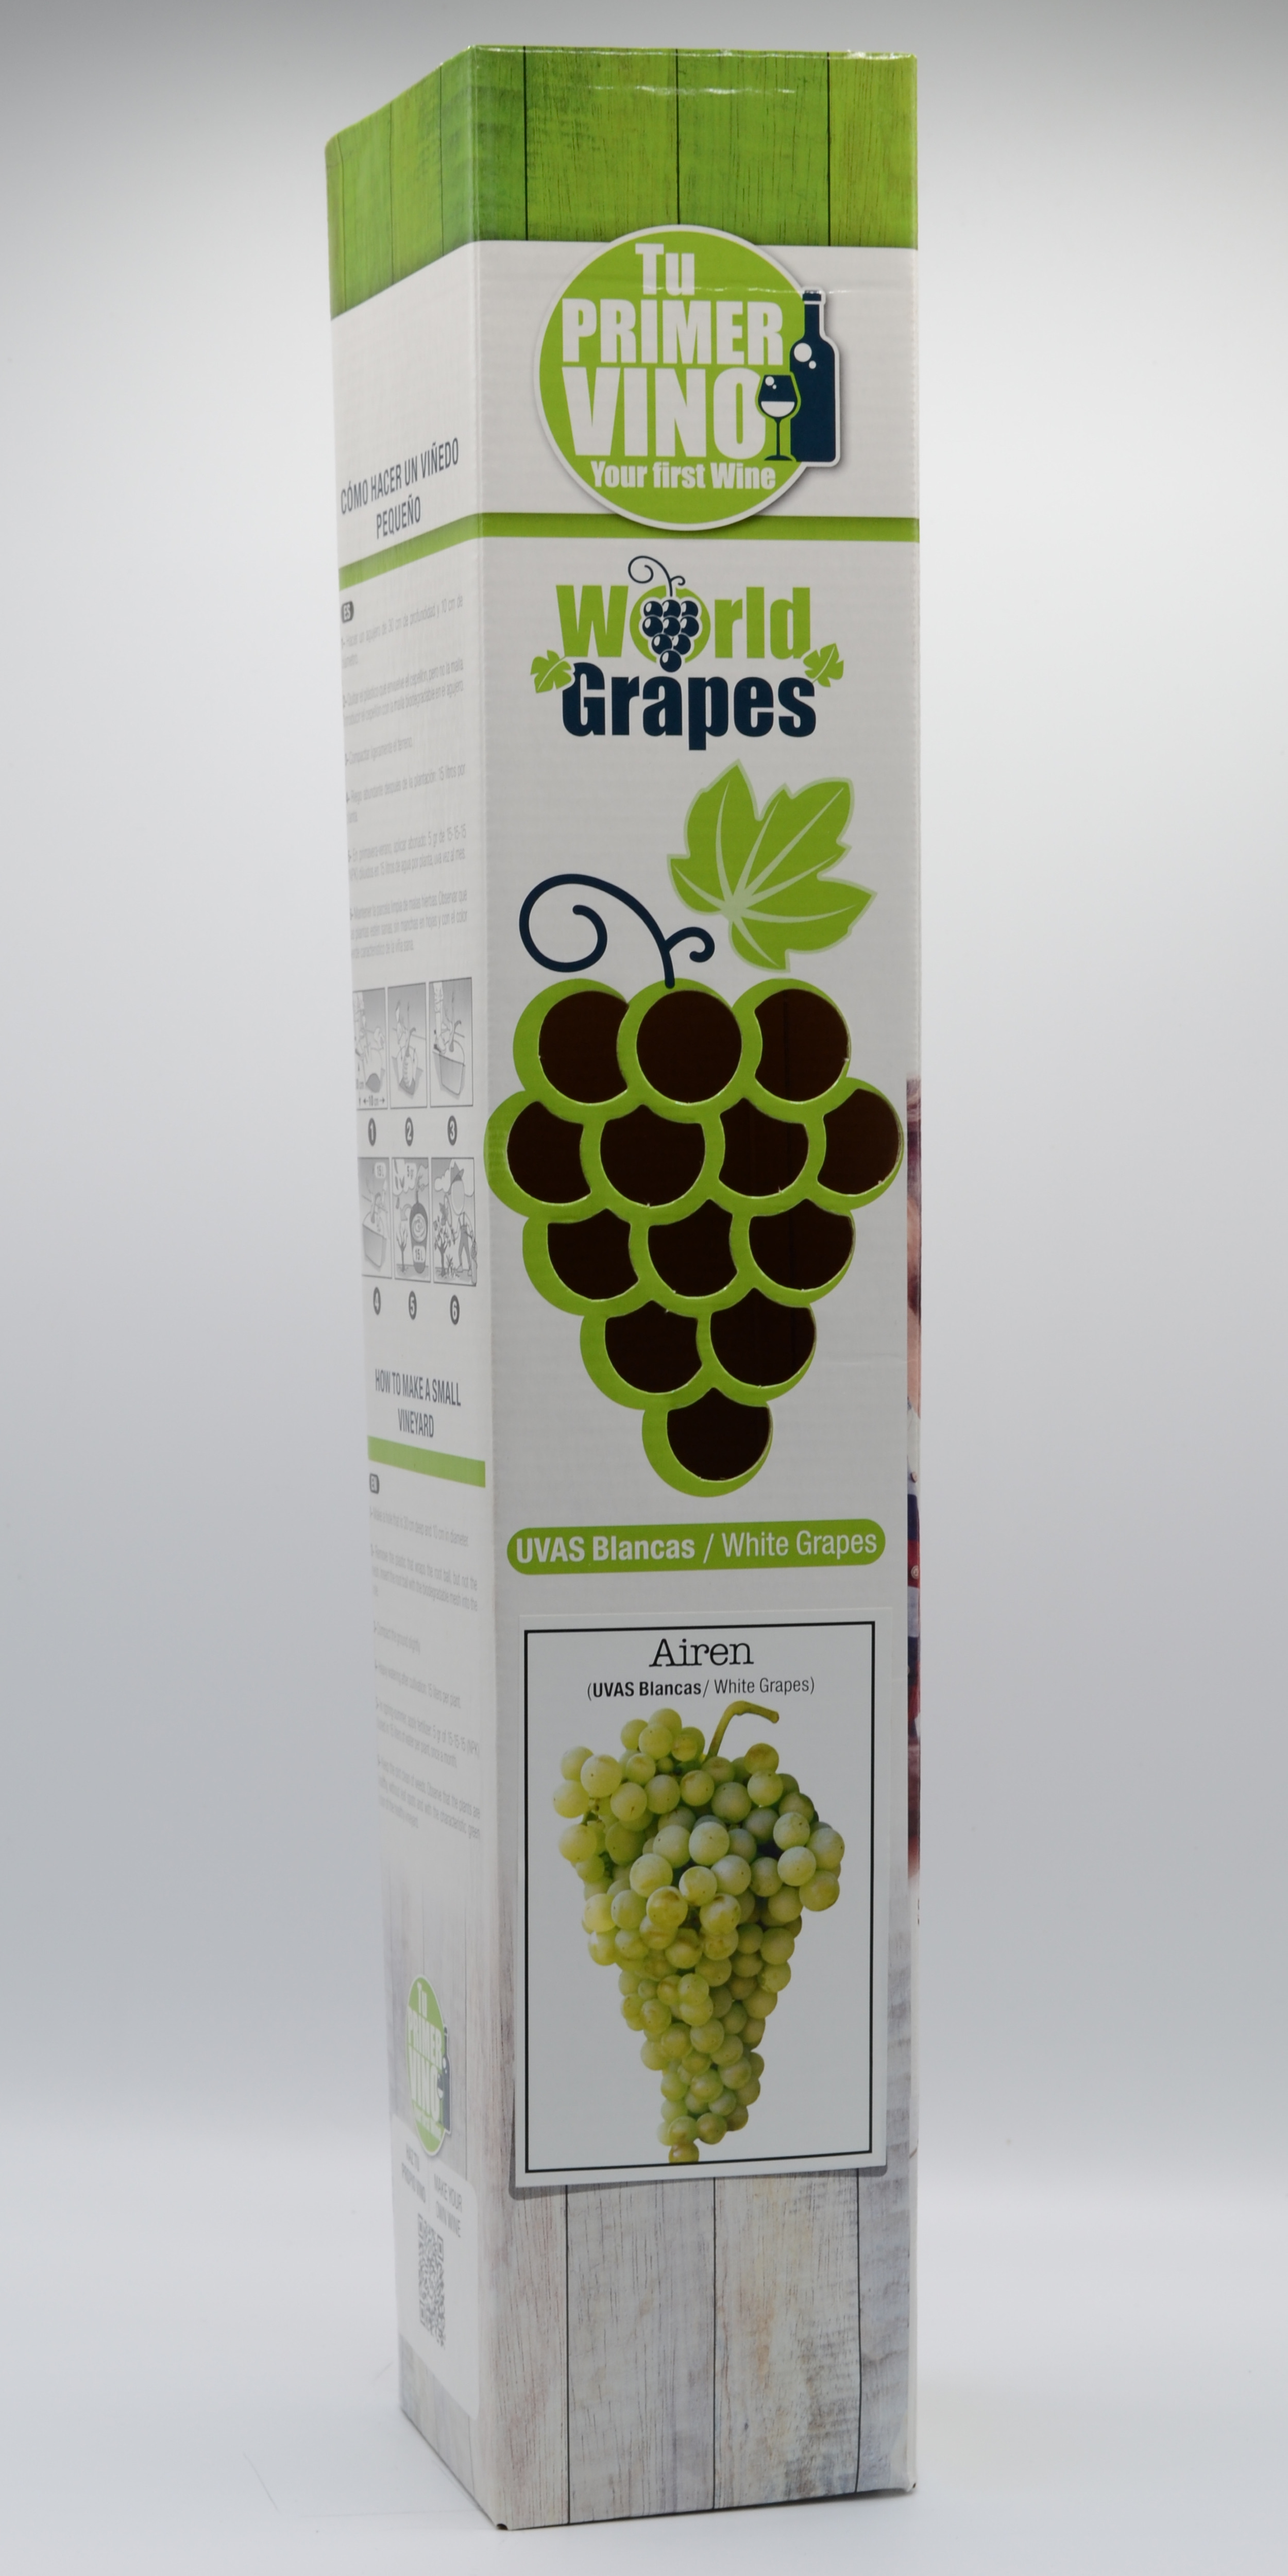 World-Grapes Airen